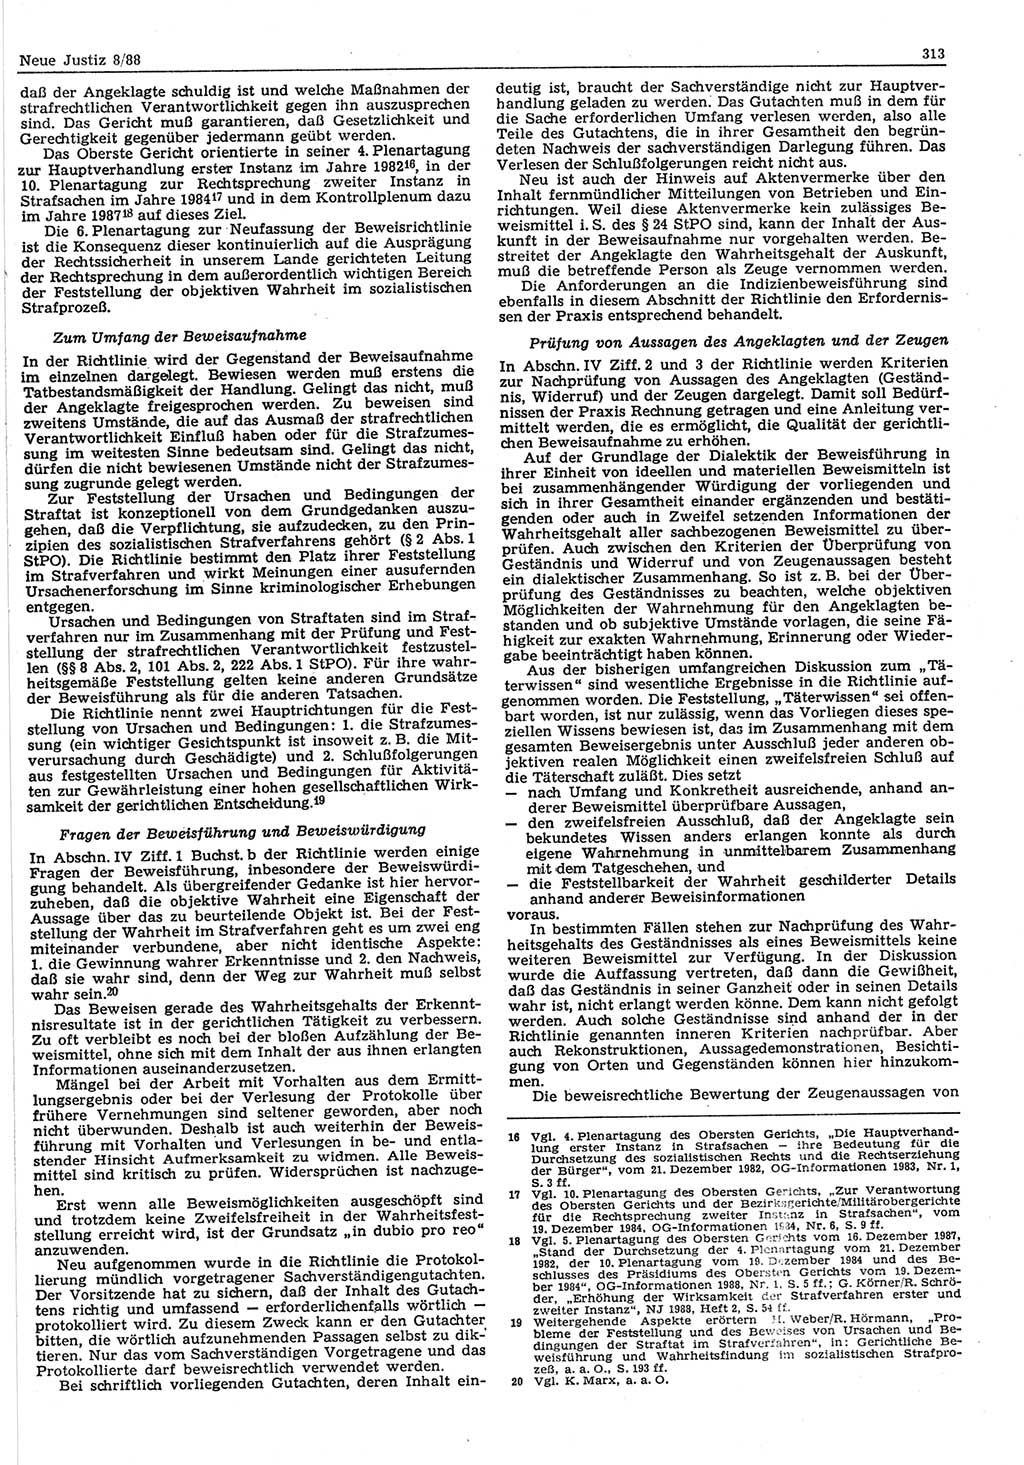 Neue Justiz (NJ), Zeitschrift für sozialistisches Recht und Gesetzlichkeit [Deutsche Demokratische Republik (DDR)], 42. Jahrgang 1988, Seite 313 (NJ DDR 1988, S. 313)